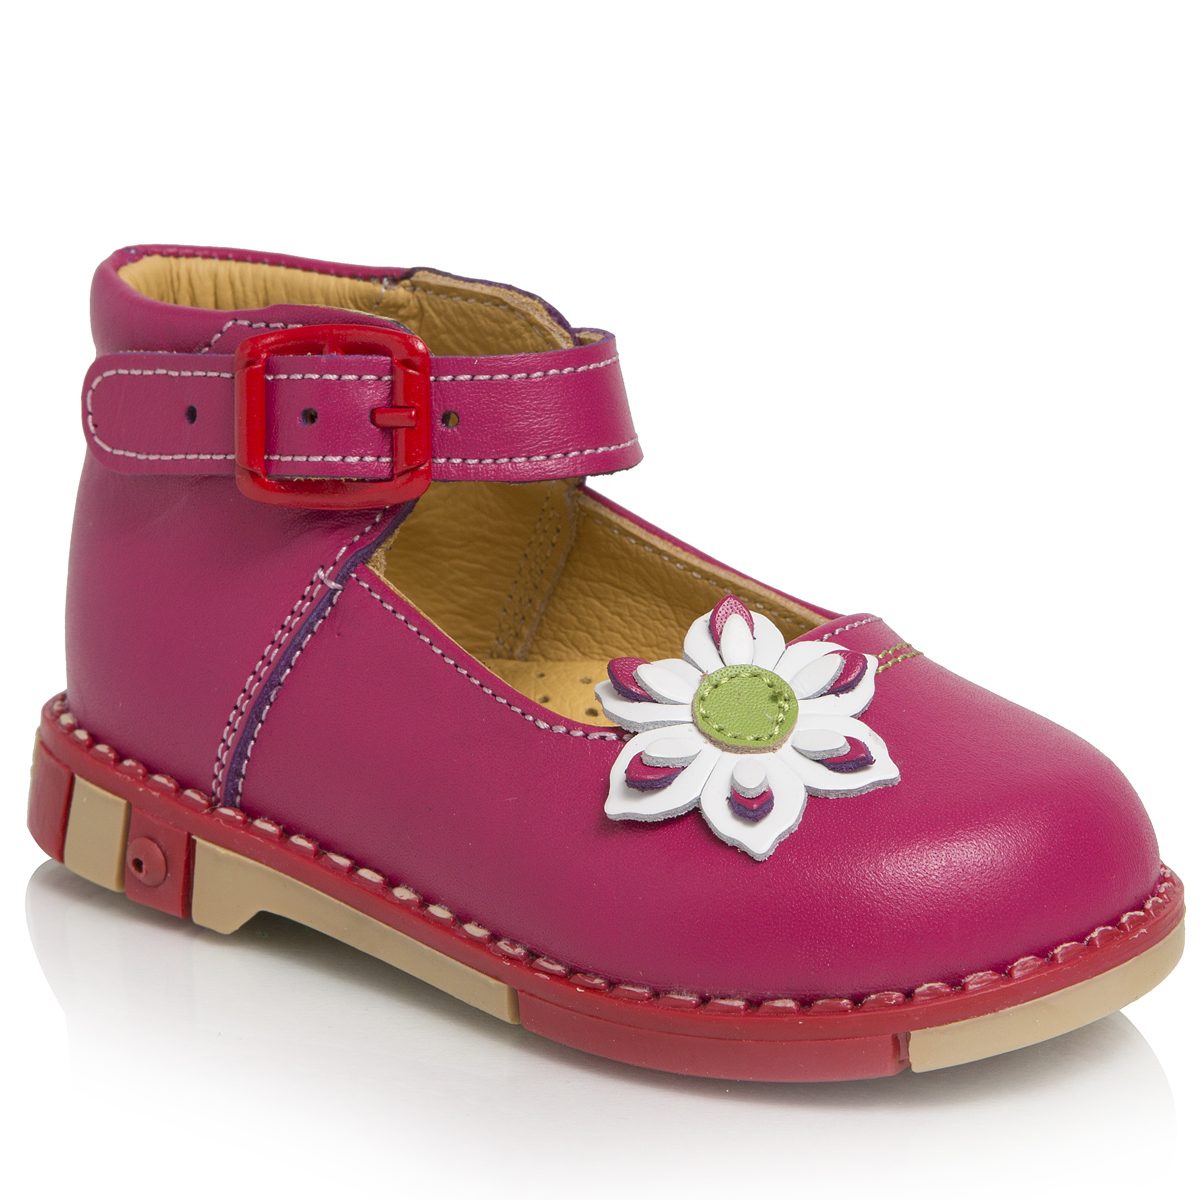 Туфли для девочки Таши Орто, цвет: малиновый. 211-20. Размер 21